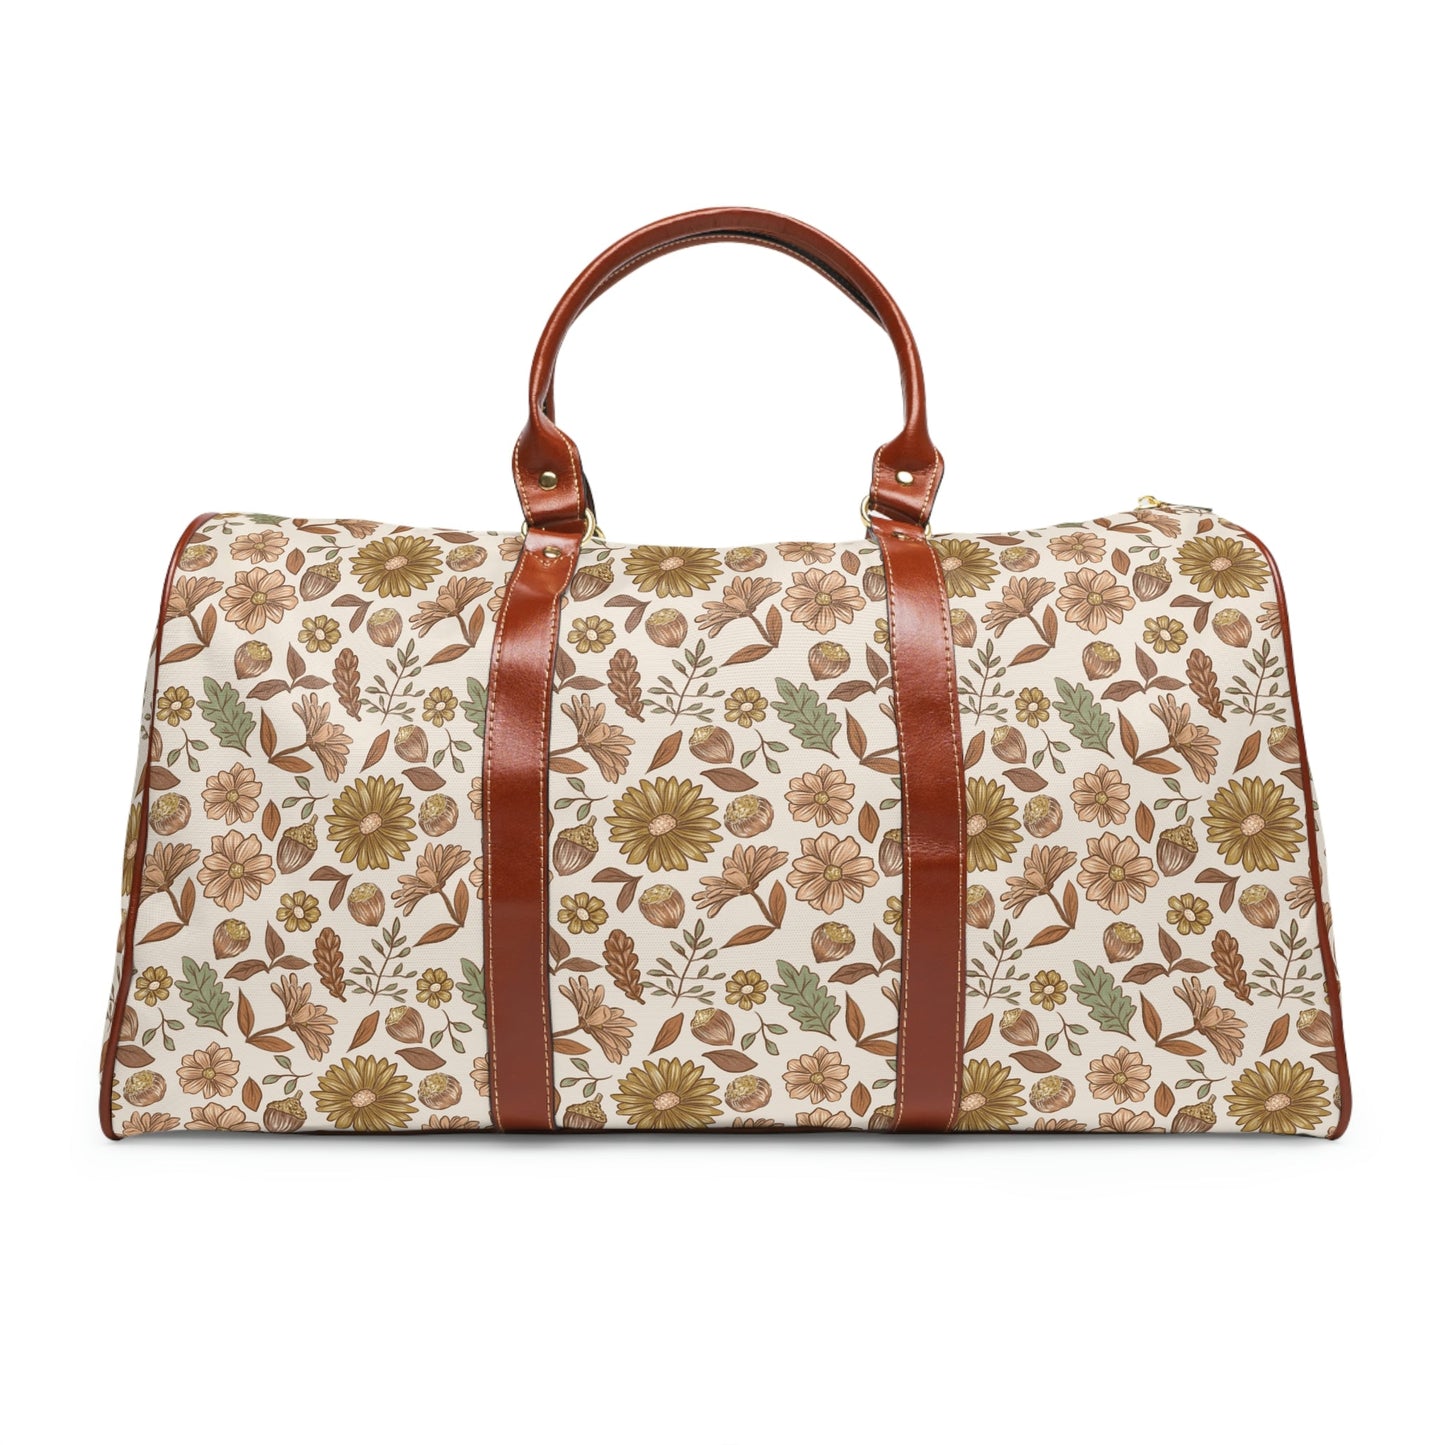 Acorn leaves - Wheat Background Waterproof Travel Bag